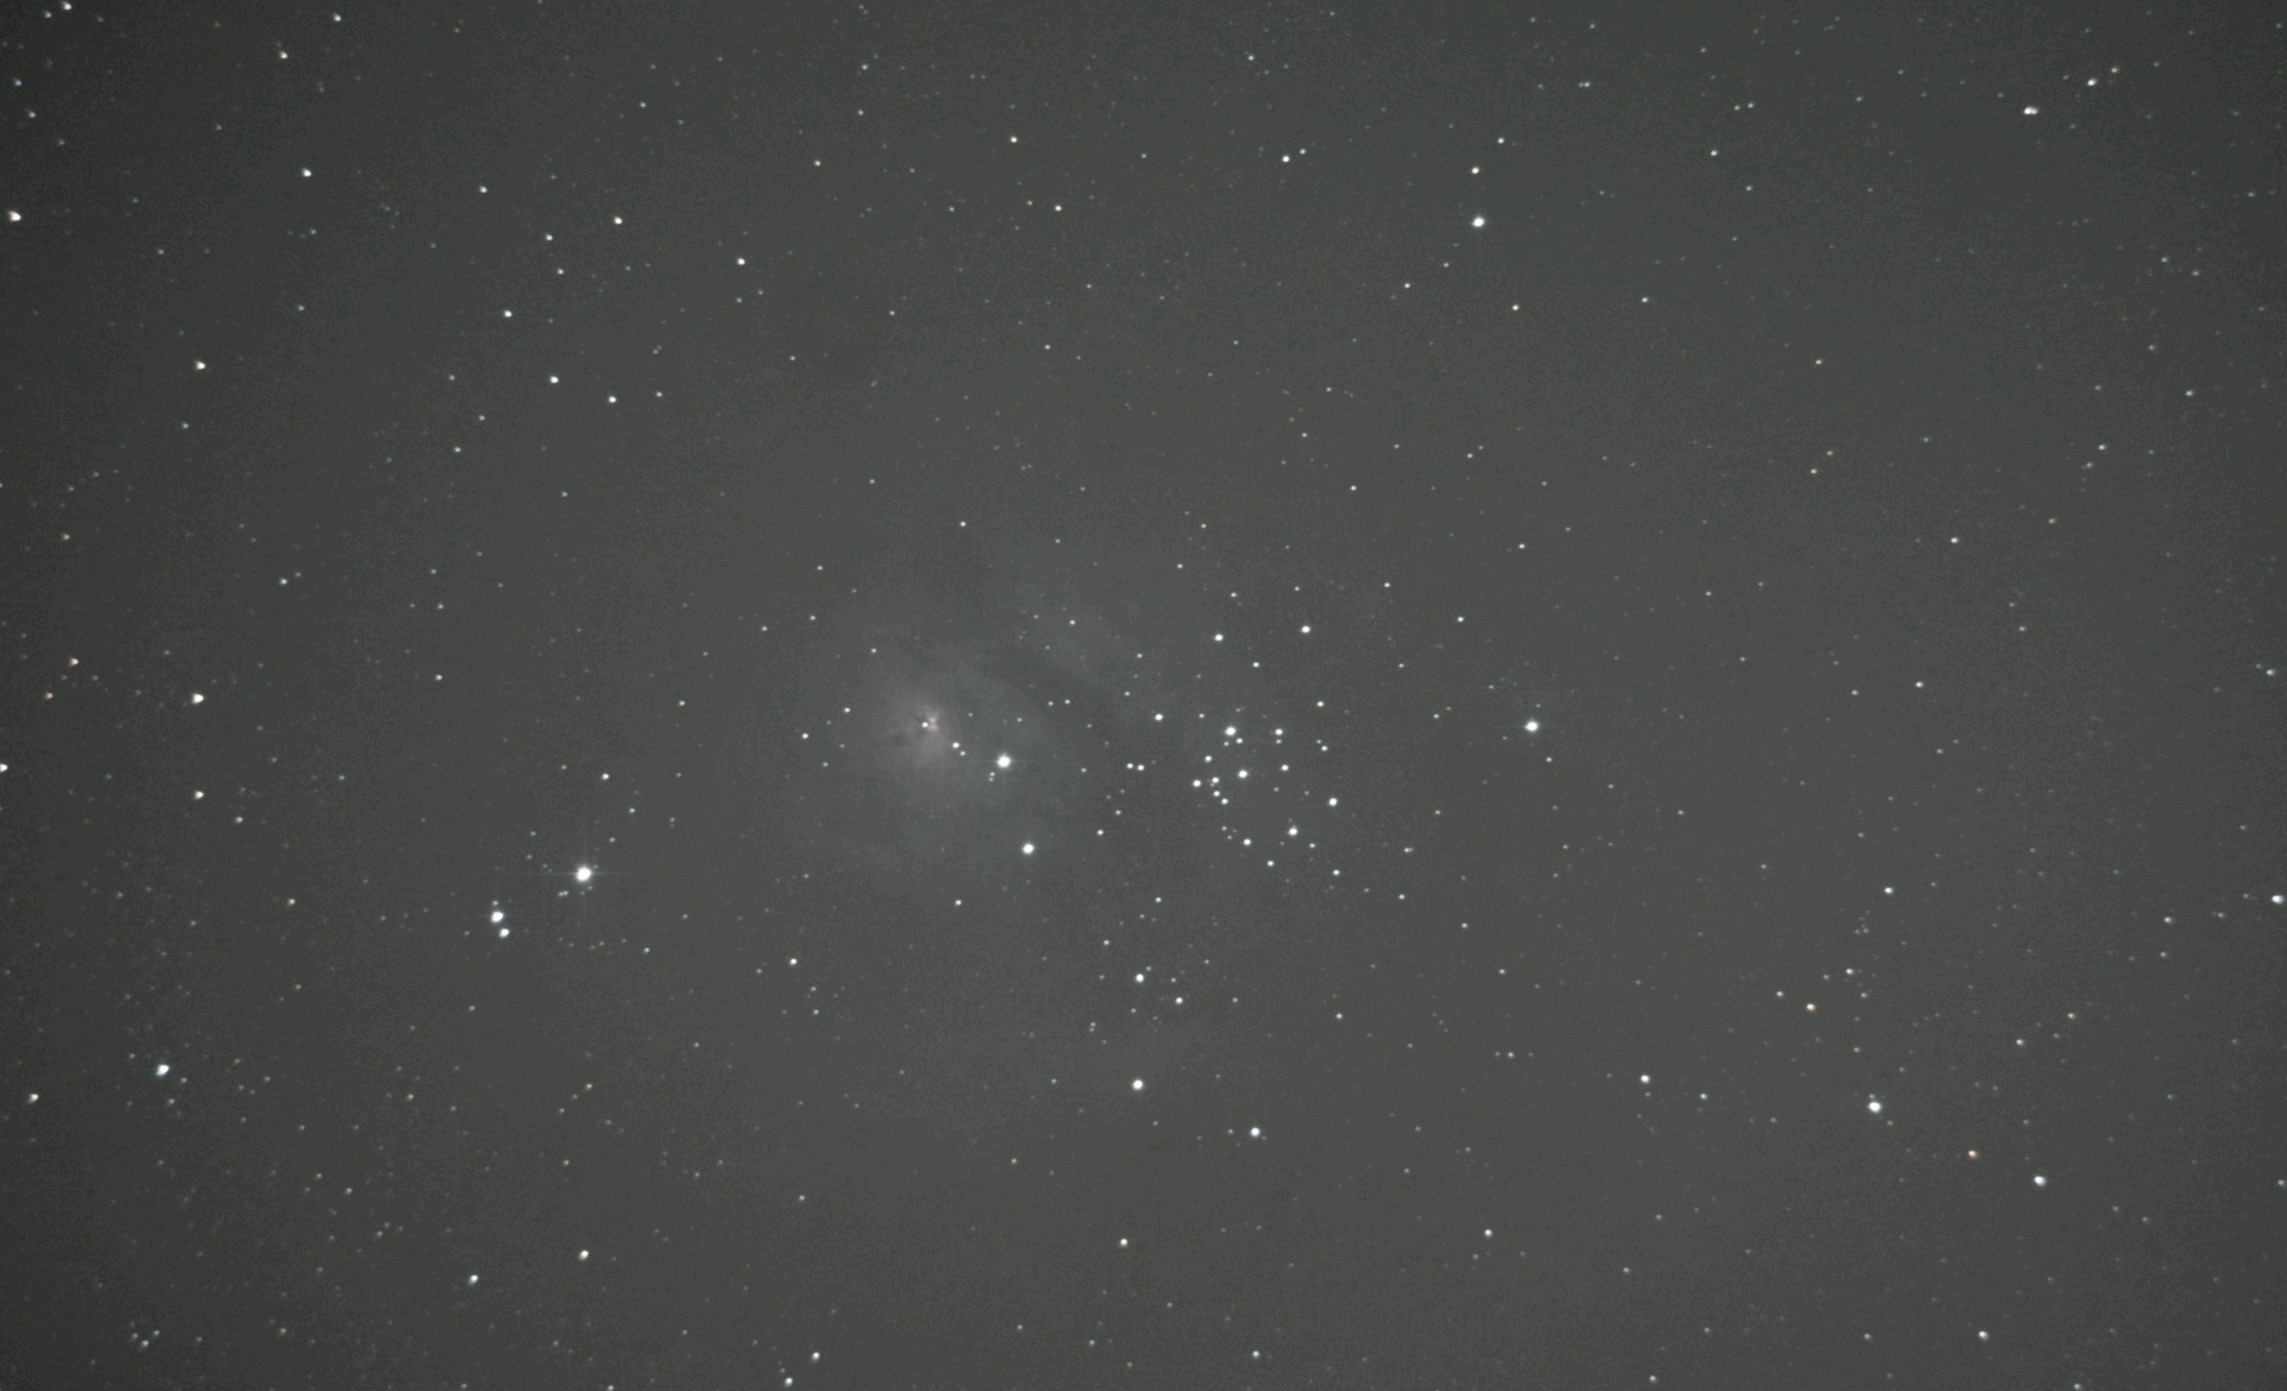 5776b60c5a19a_Messier8.jpg.a89983e9dea85